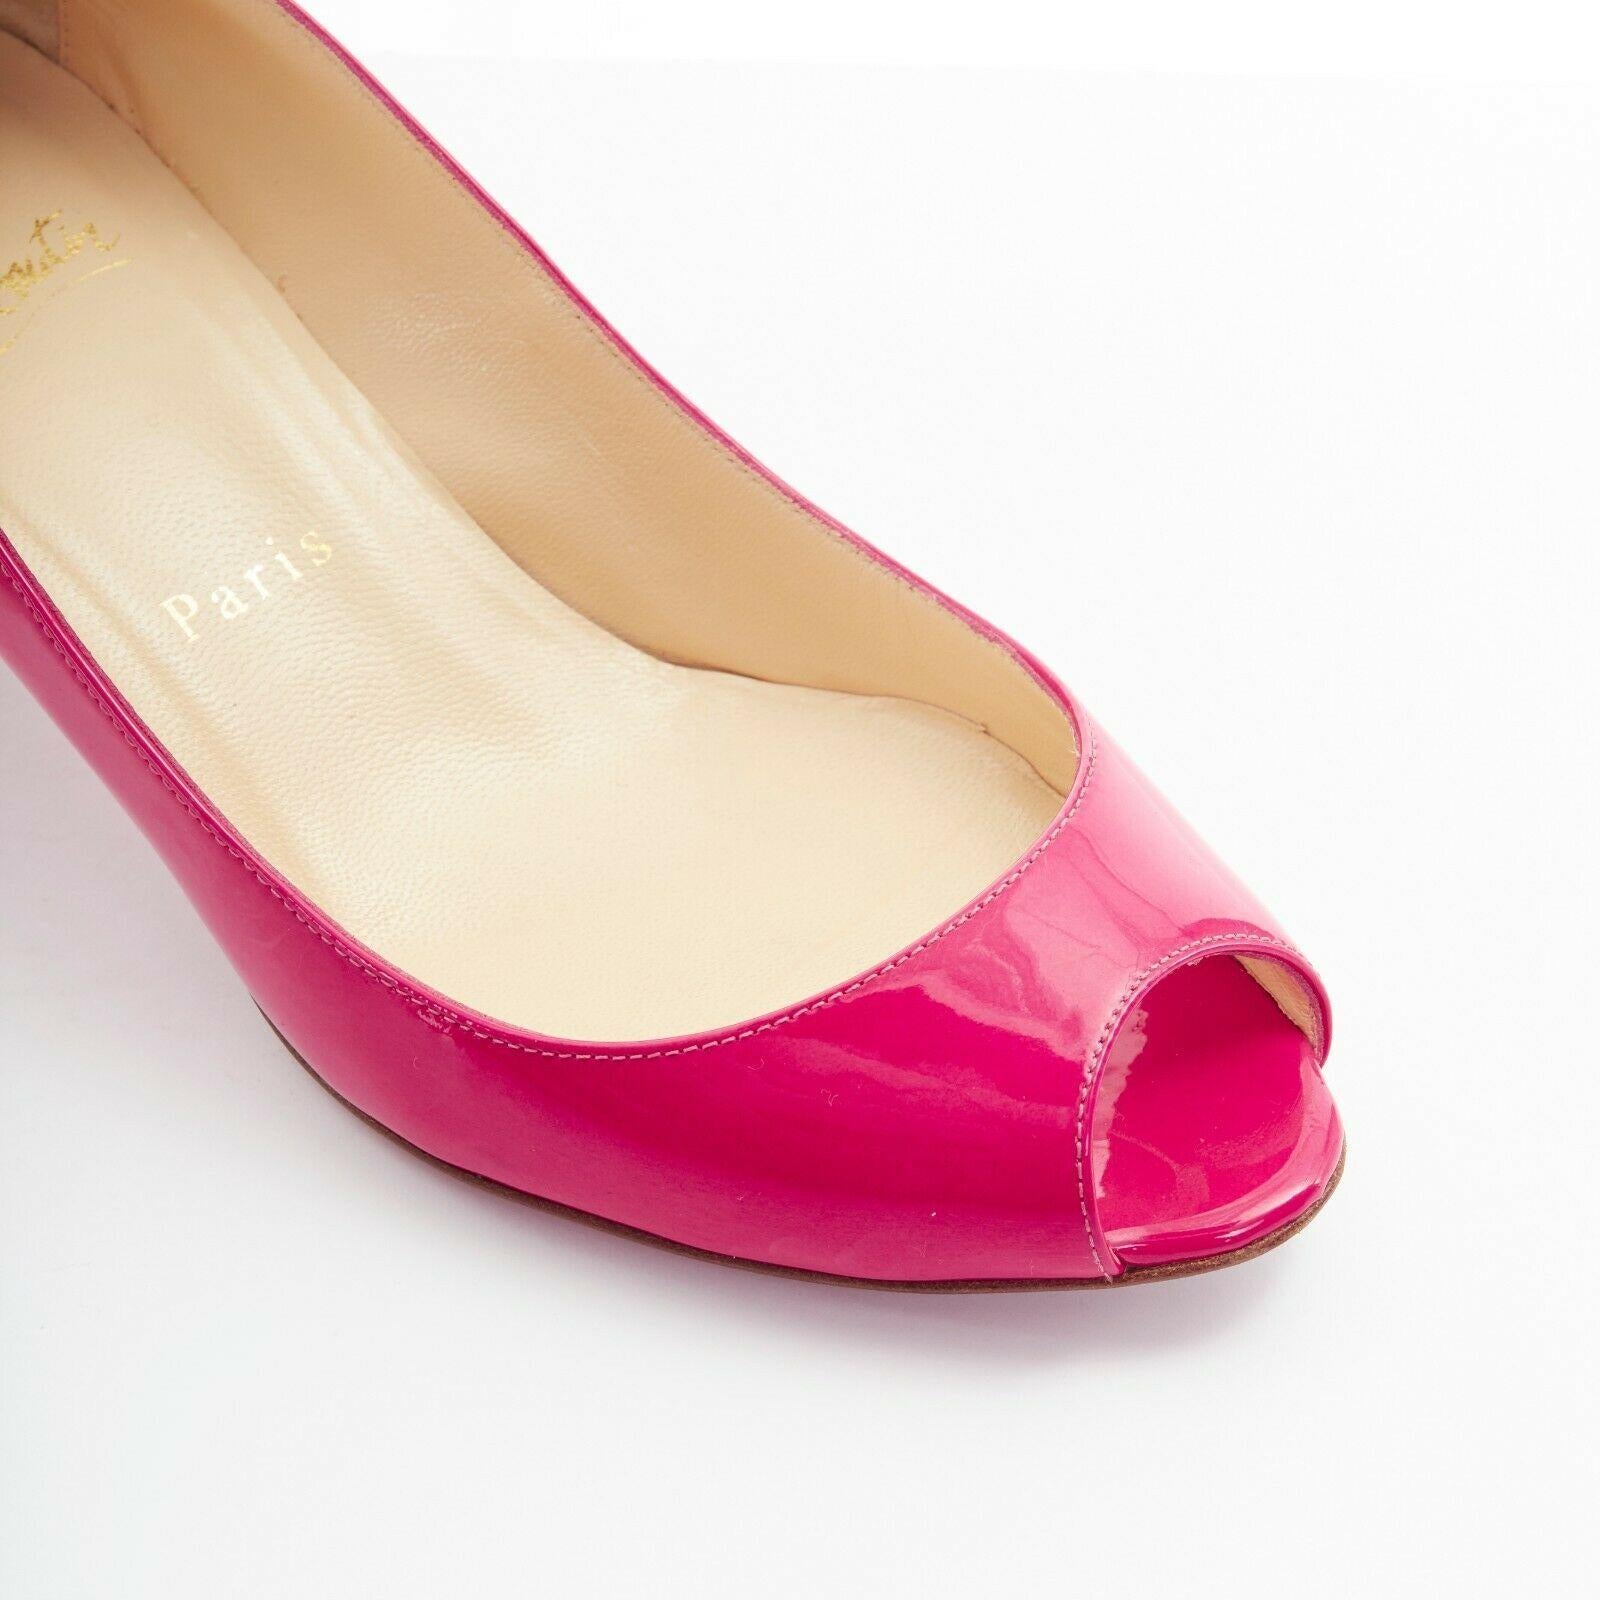 Women's CHRISTIAN LOUBOUTIN 45mm fuschia pink patent peep toe curved kitten heel EU36